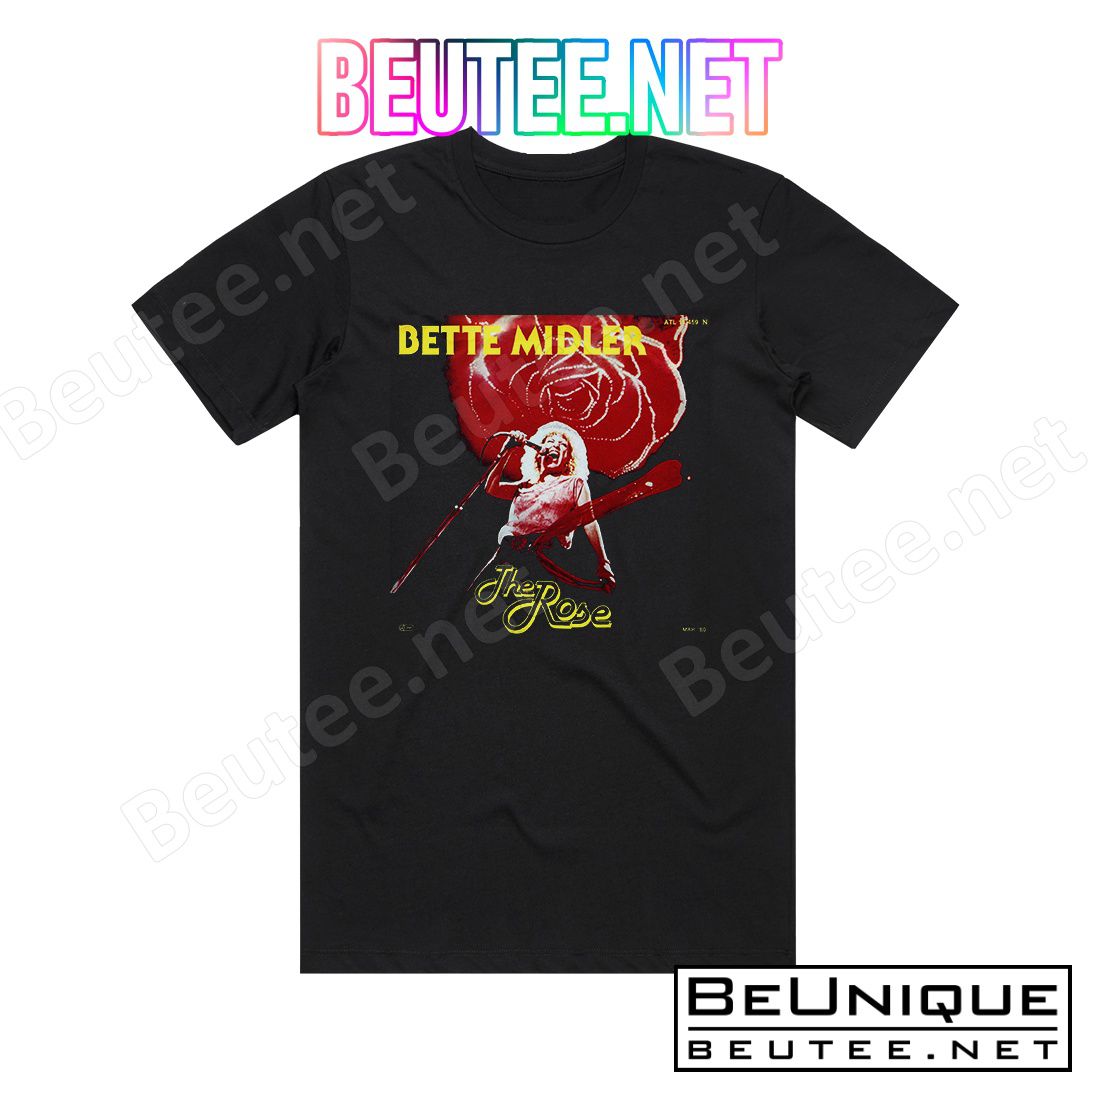 Bette Midler The Rose 1 Album Cover T-Shirt